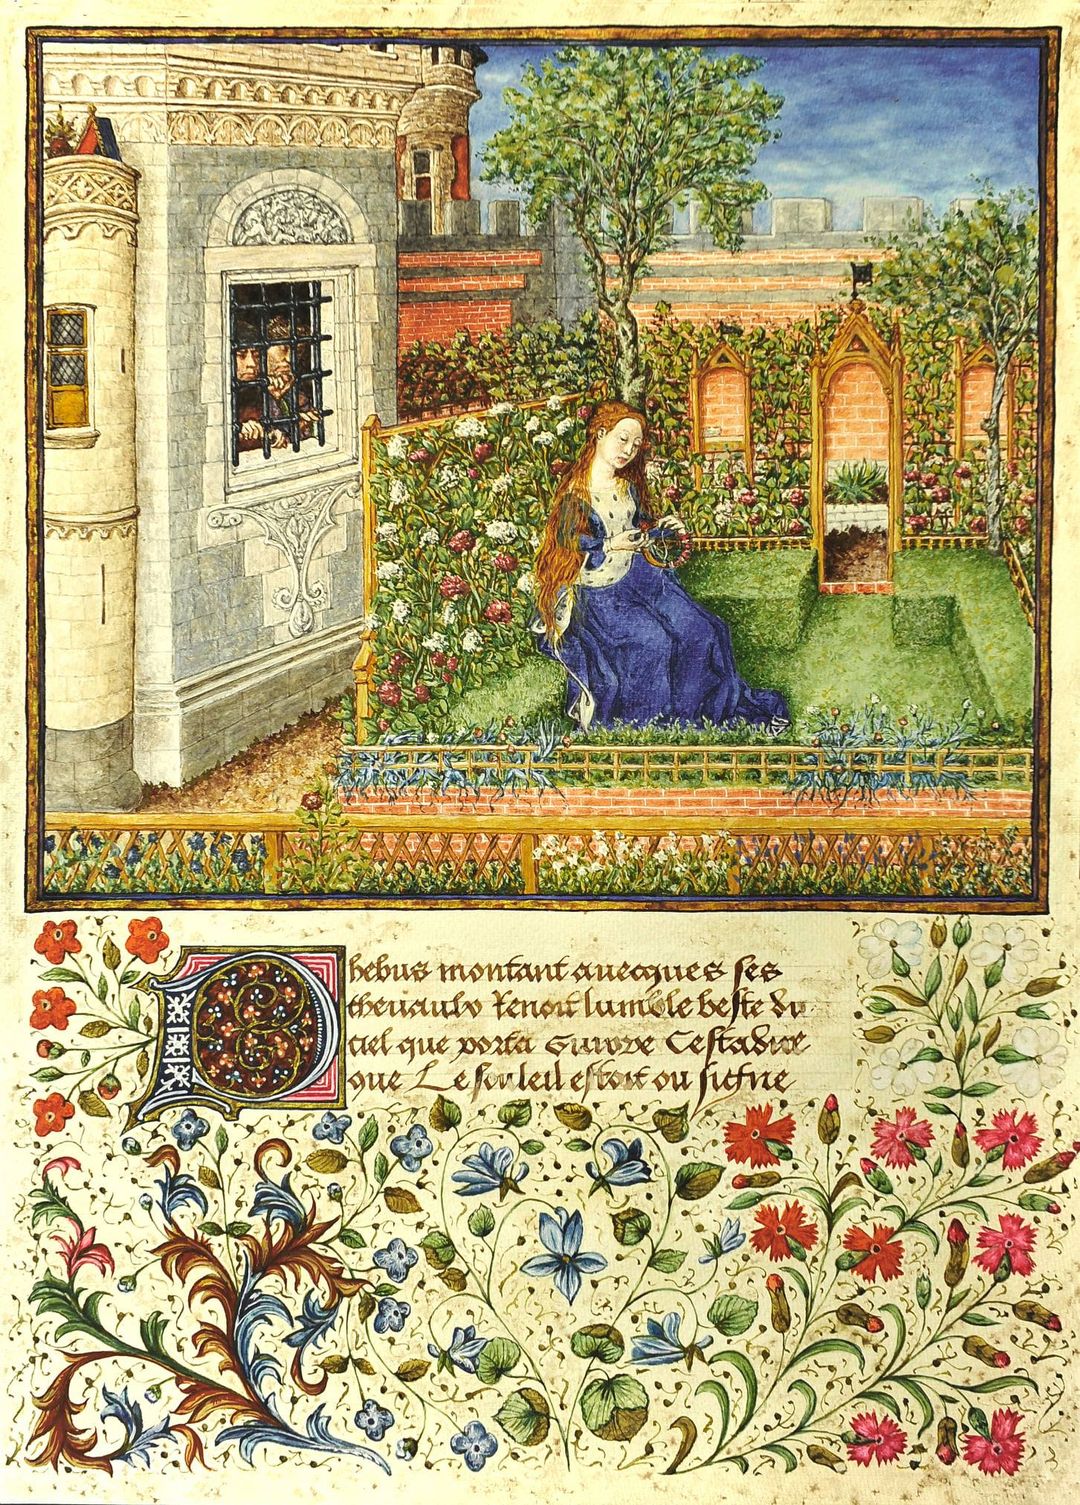 Émilie dans son jardin (Théséide de Boccace, vers 1340). Barthélémy de Eyck (1415-1472), dit le Maître du roi René entre 1460 et 1465. Vienne, Bibliothèque nationale d’Autriche